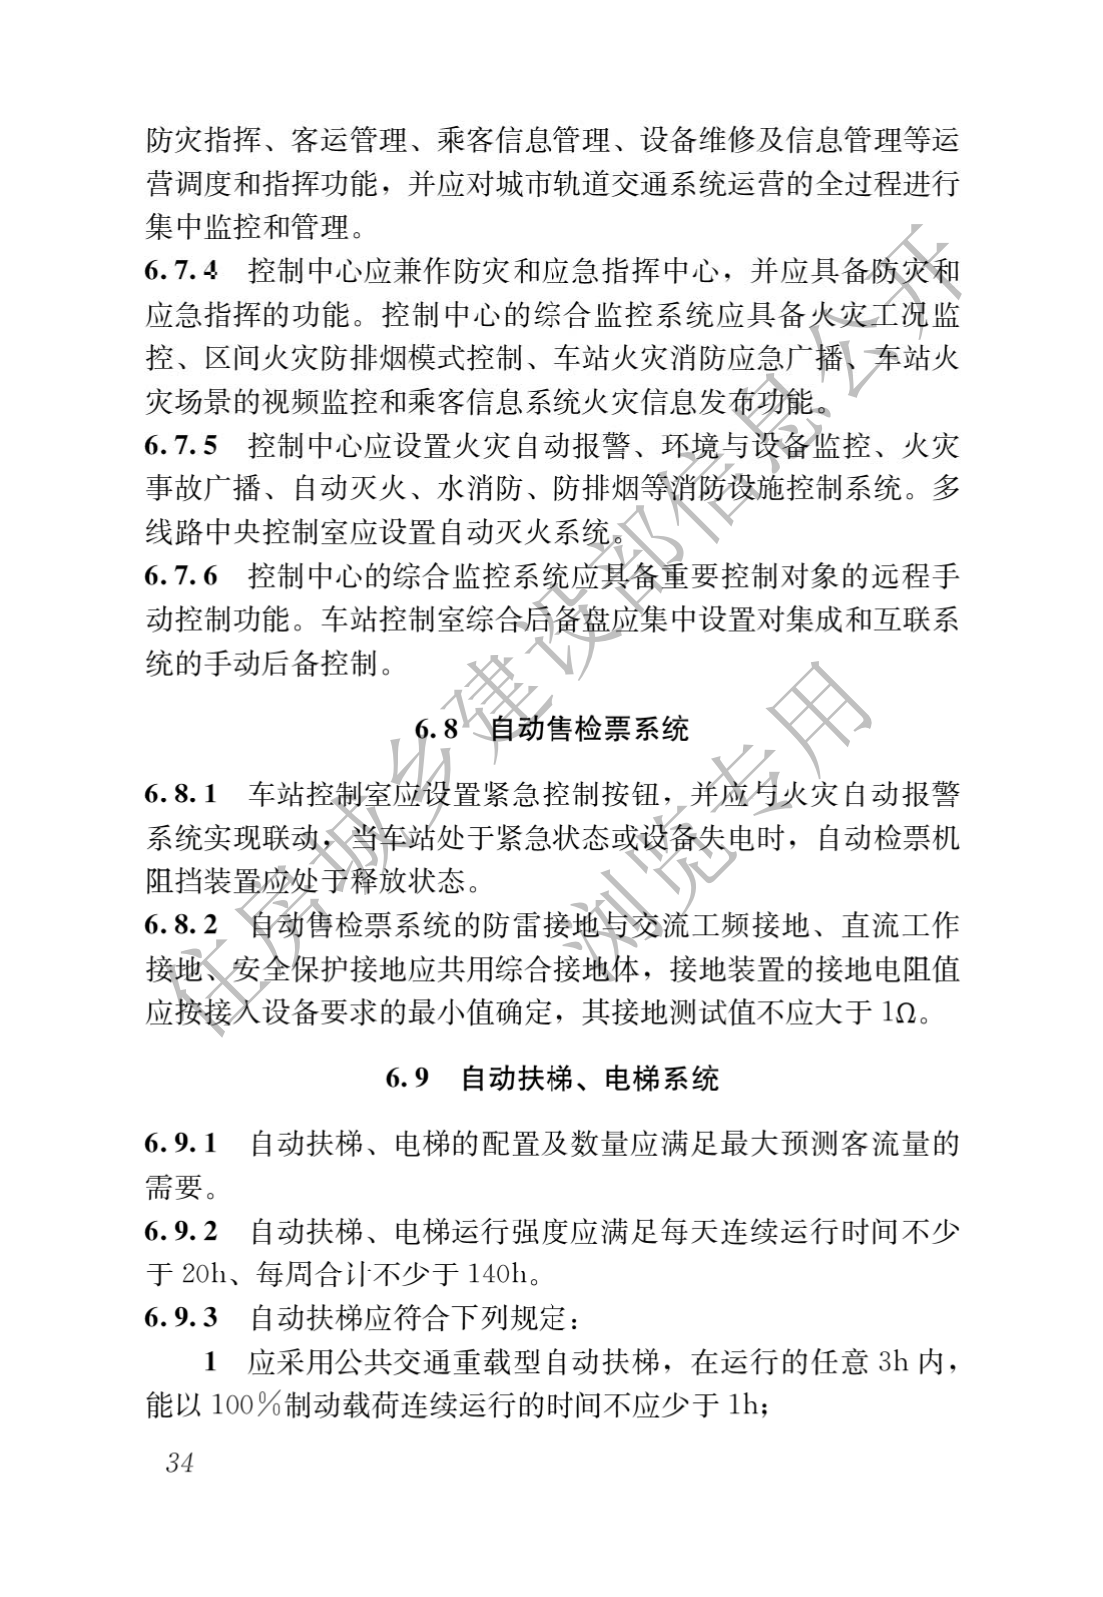 住房和城鄉建設部關于發布國家标準 《城市軌道交通工(gōng)程項目規範》的公告(圖38)